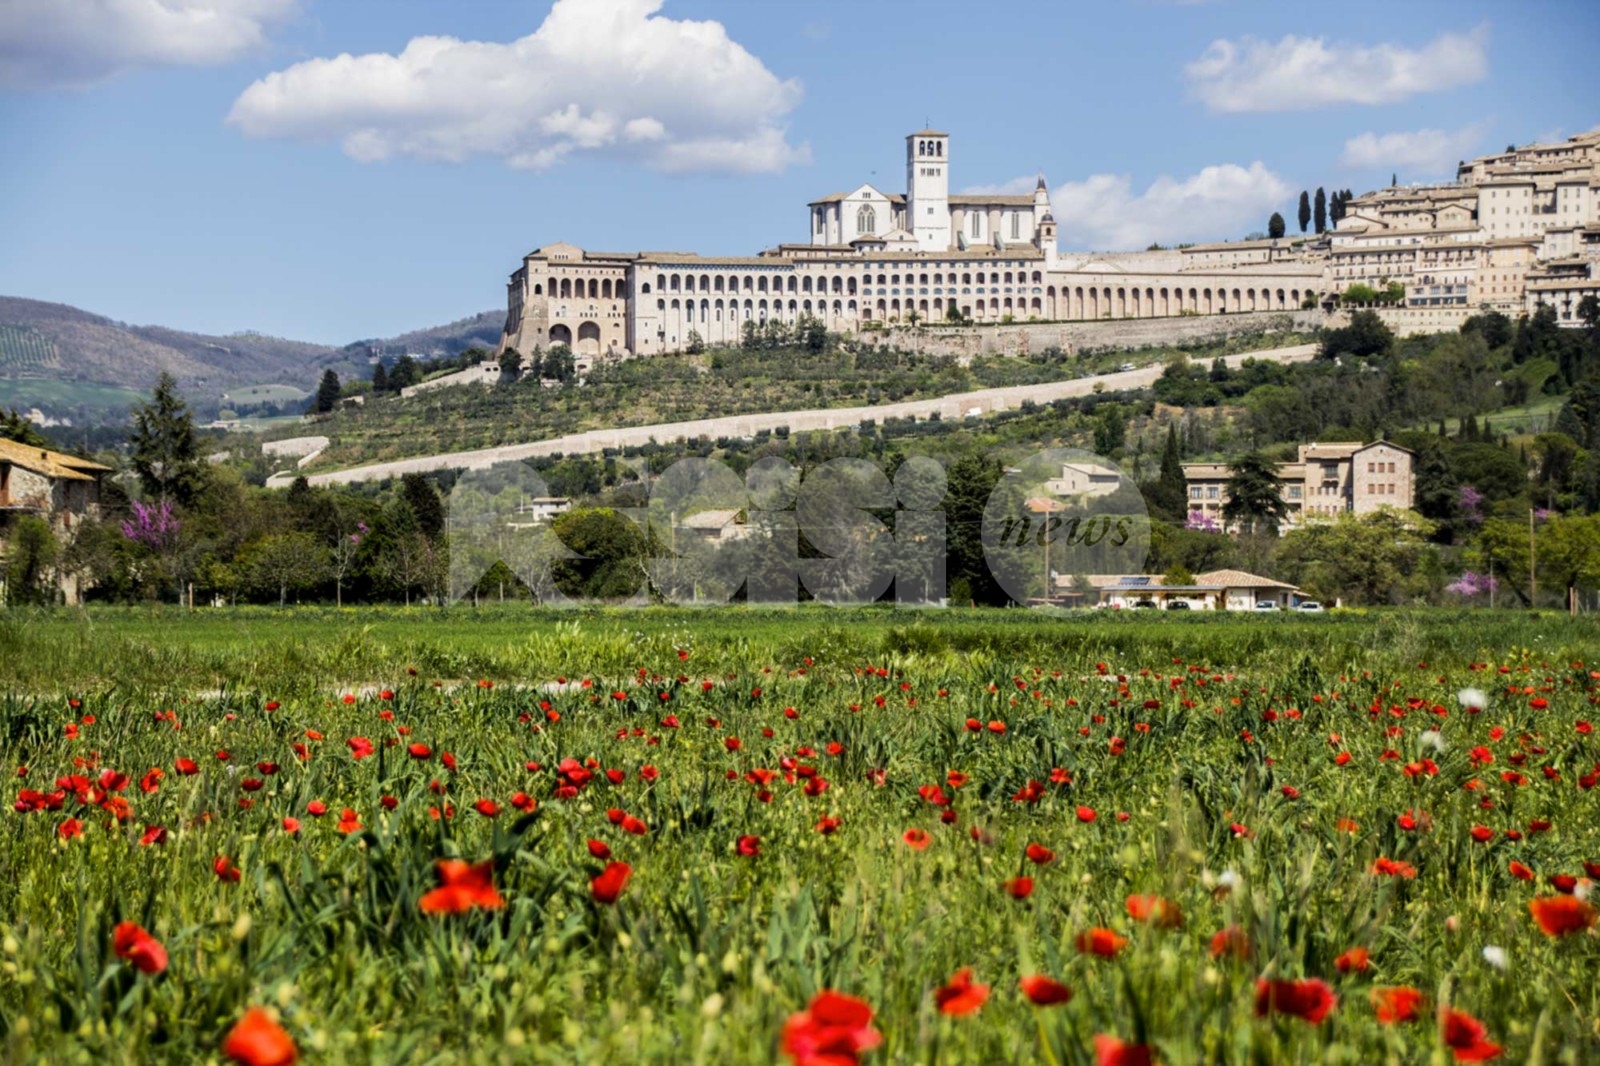 Economy of Francesco finalmente in presenza: appuntamento a settembre ad Assisi